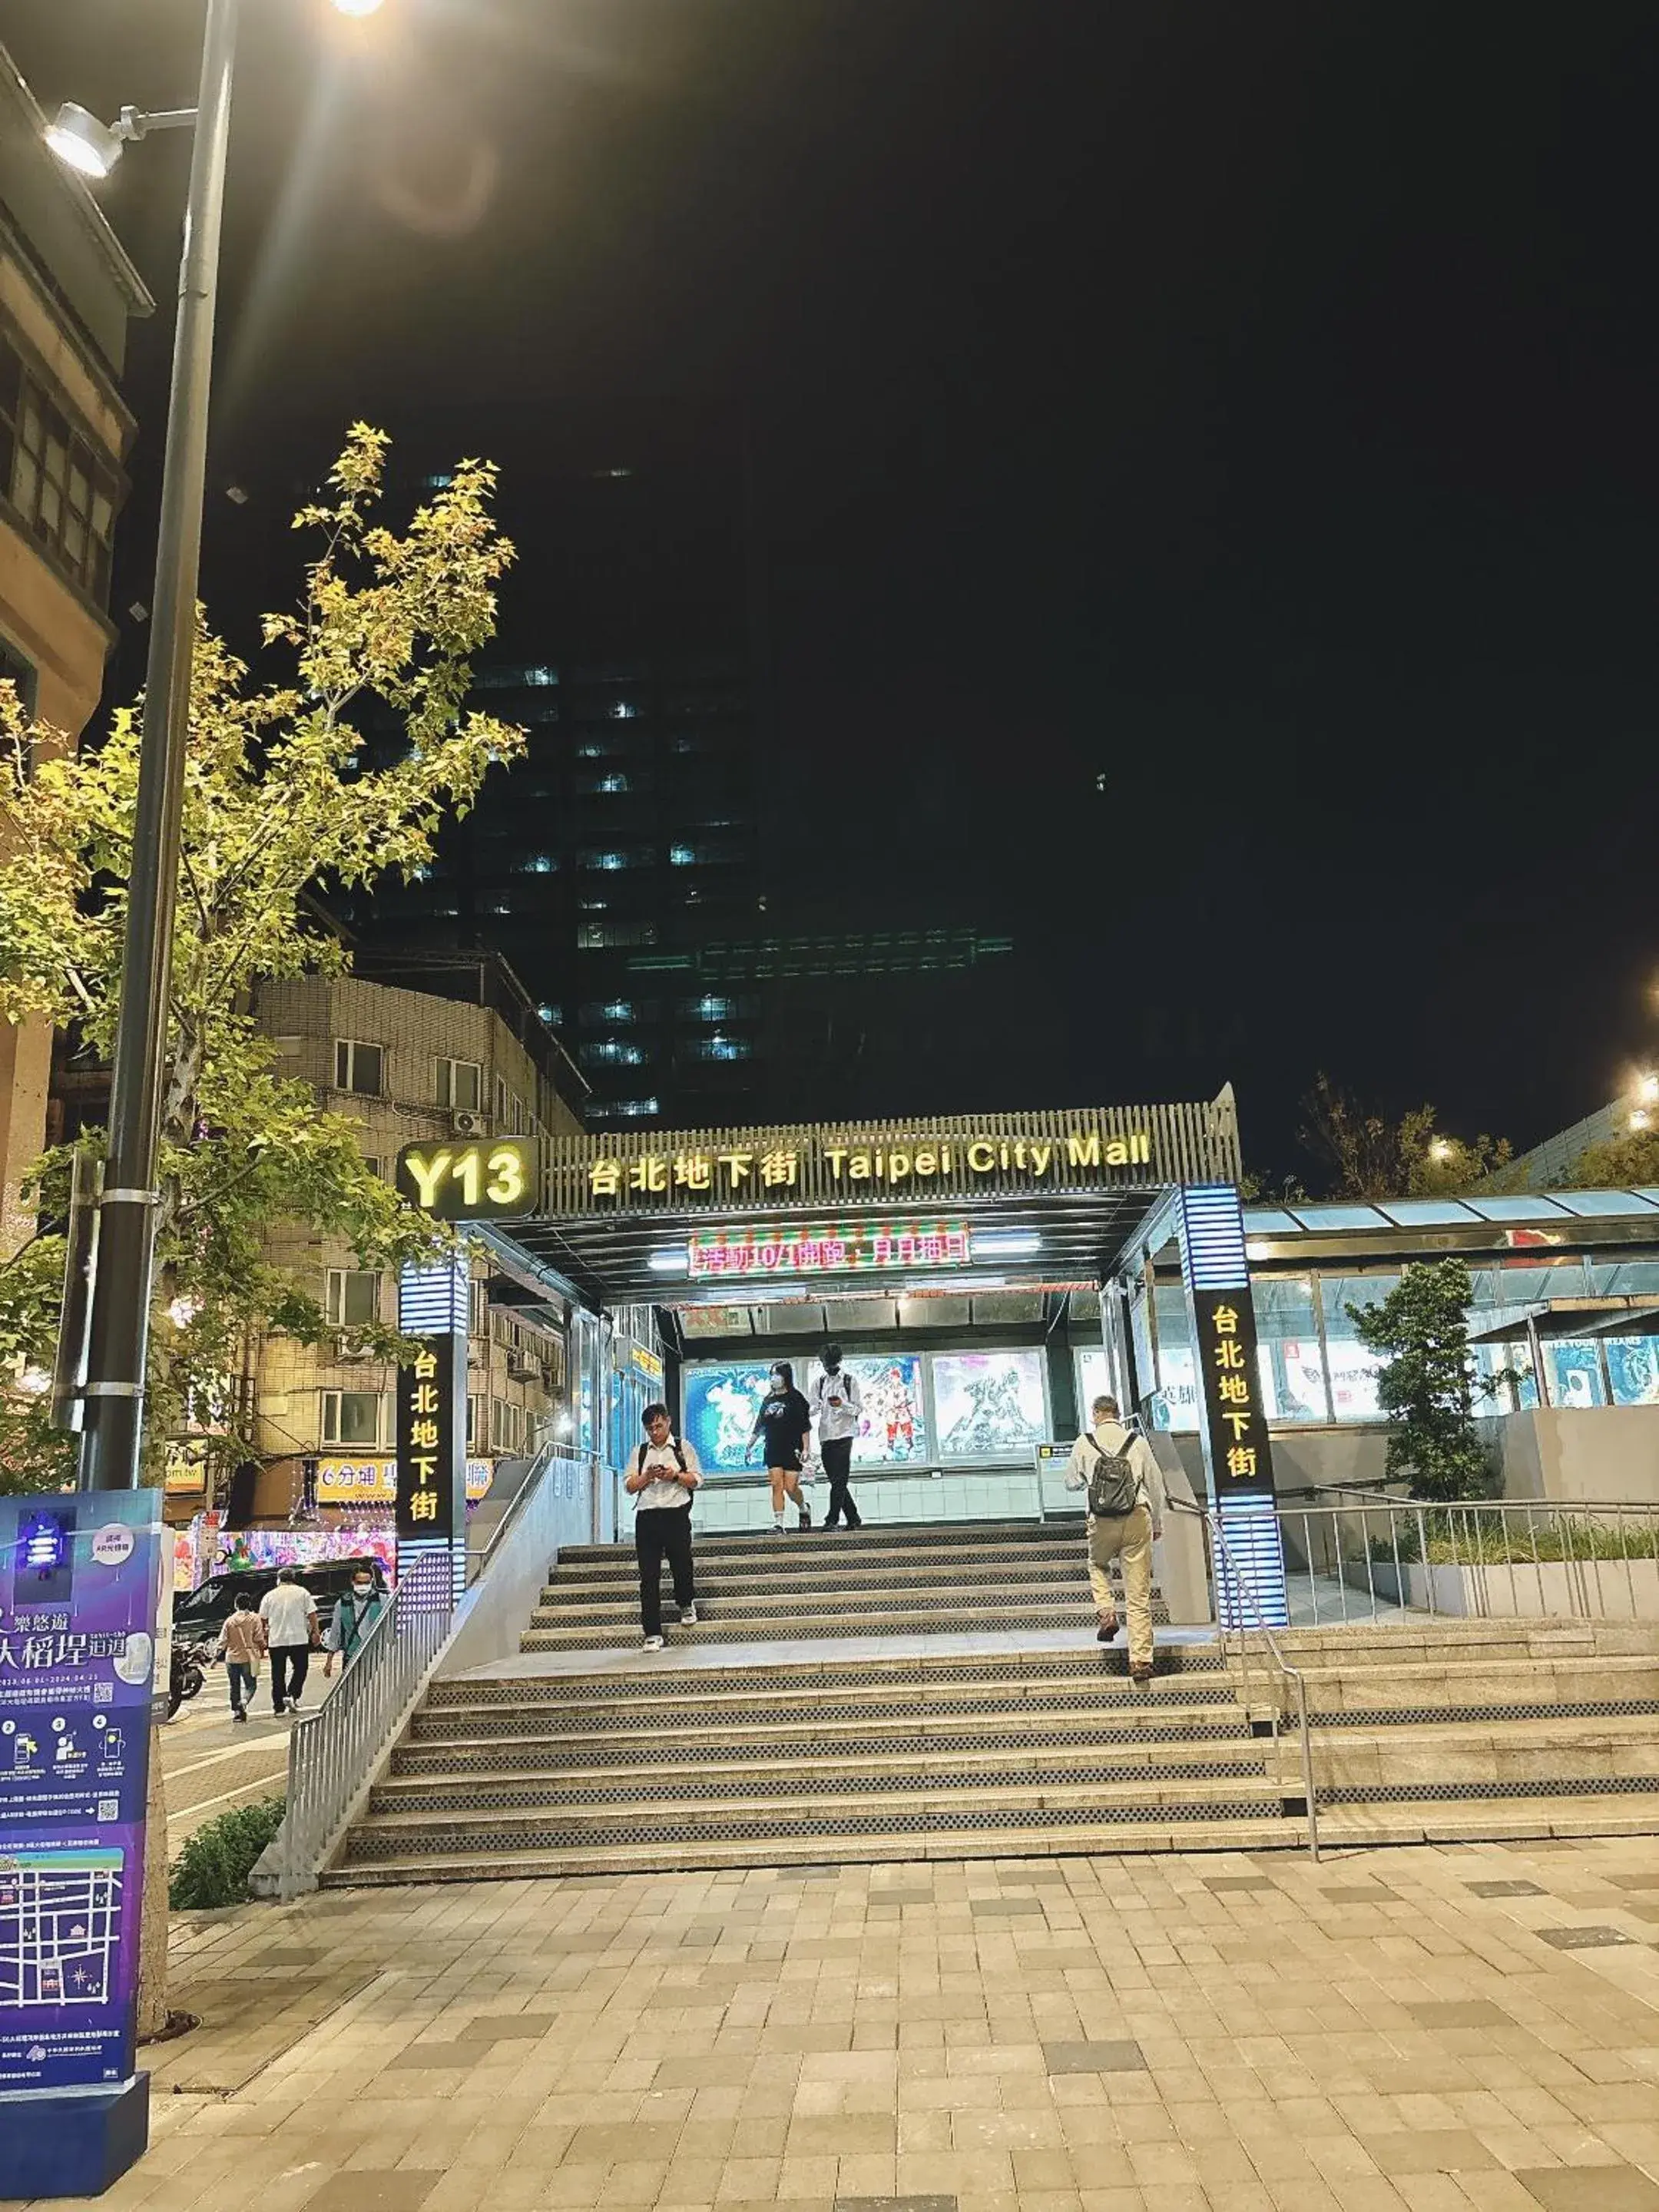 Street view in Main Inn Taipei